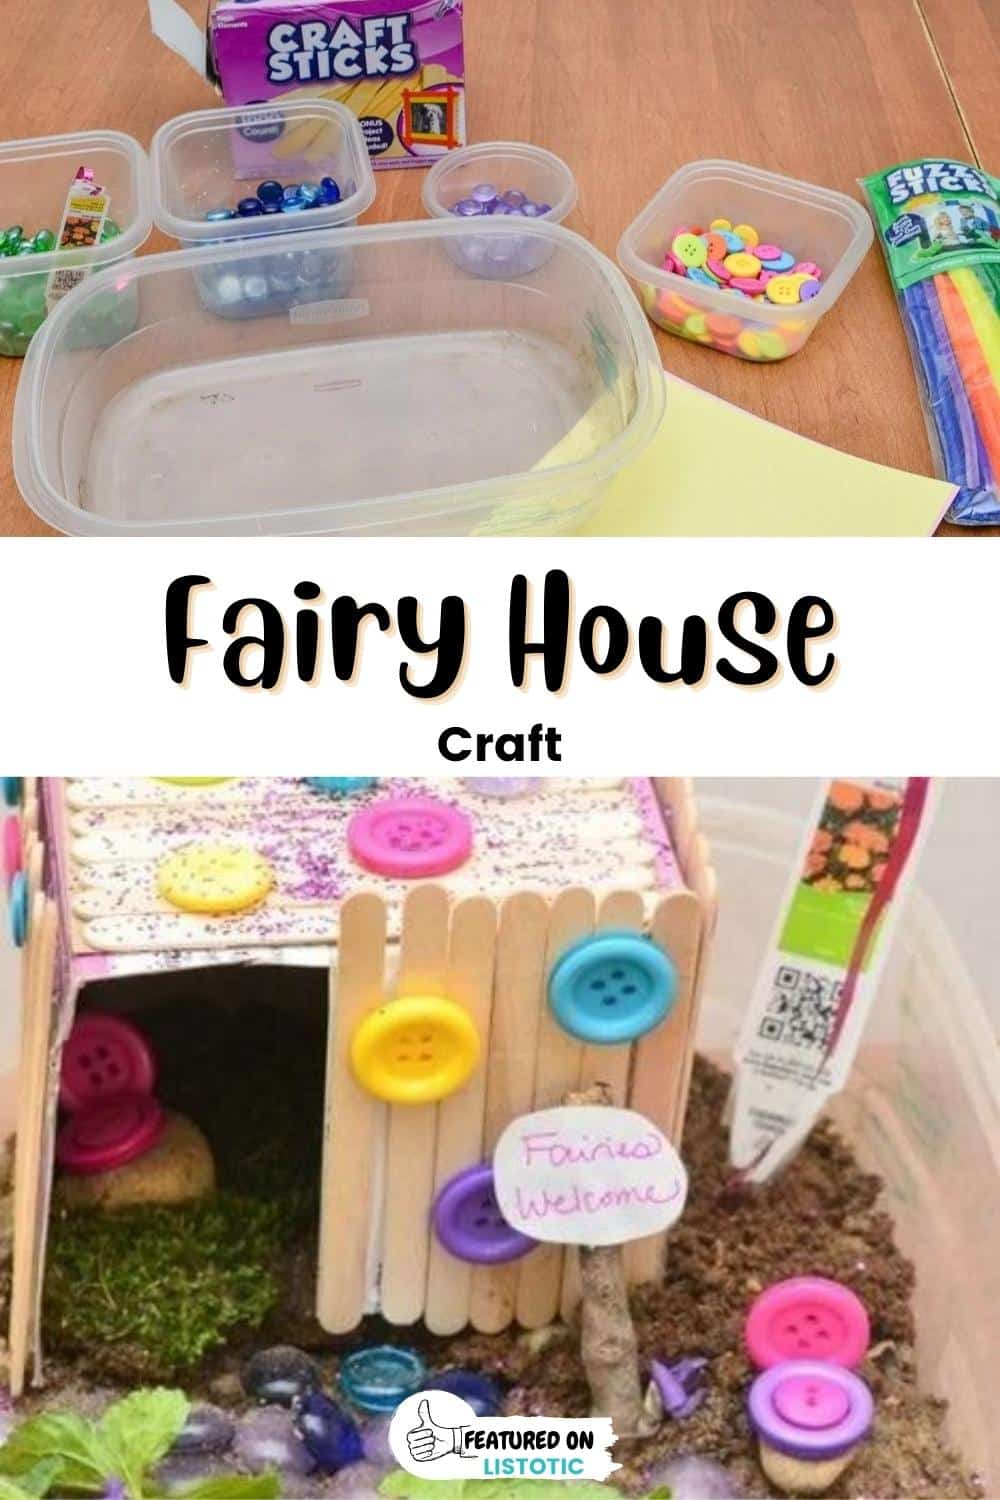 Fairy house.